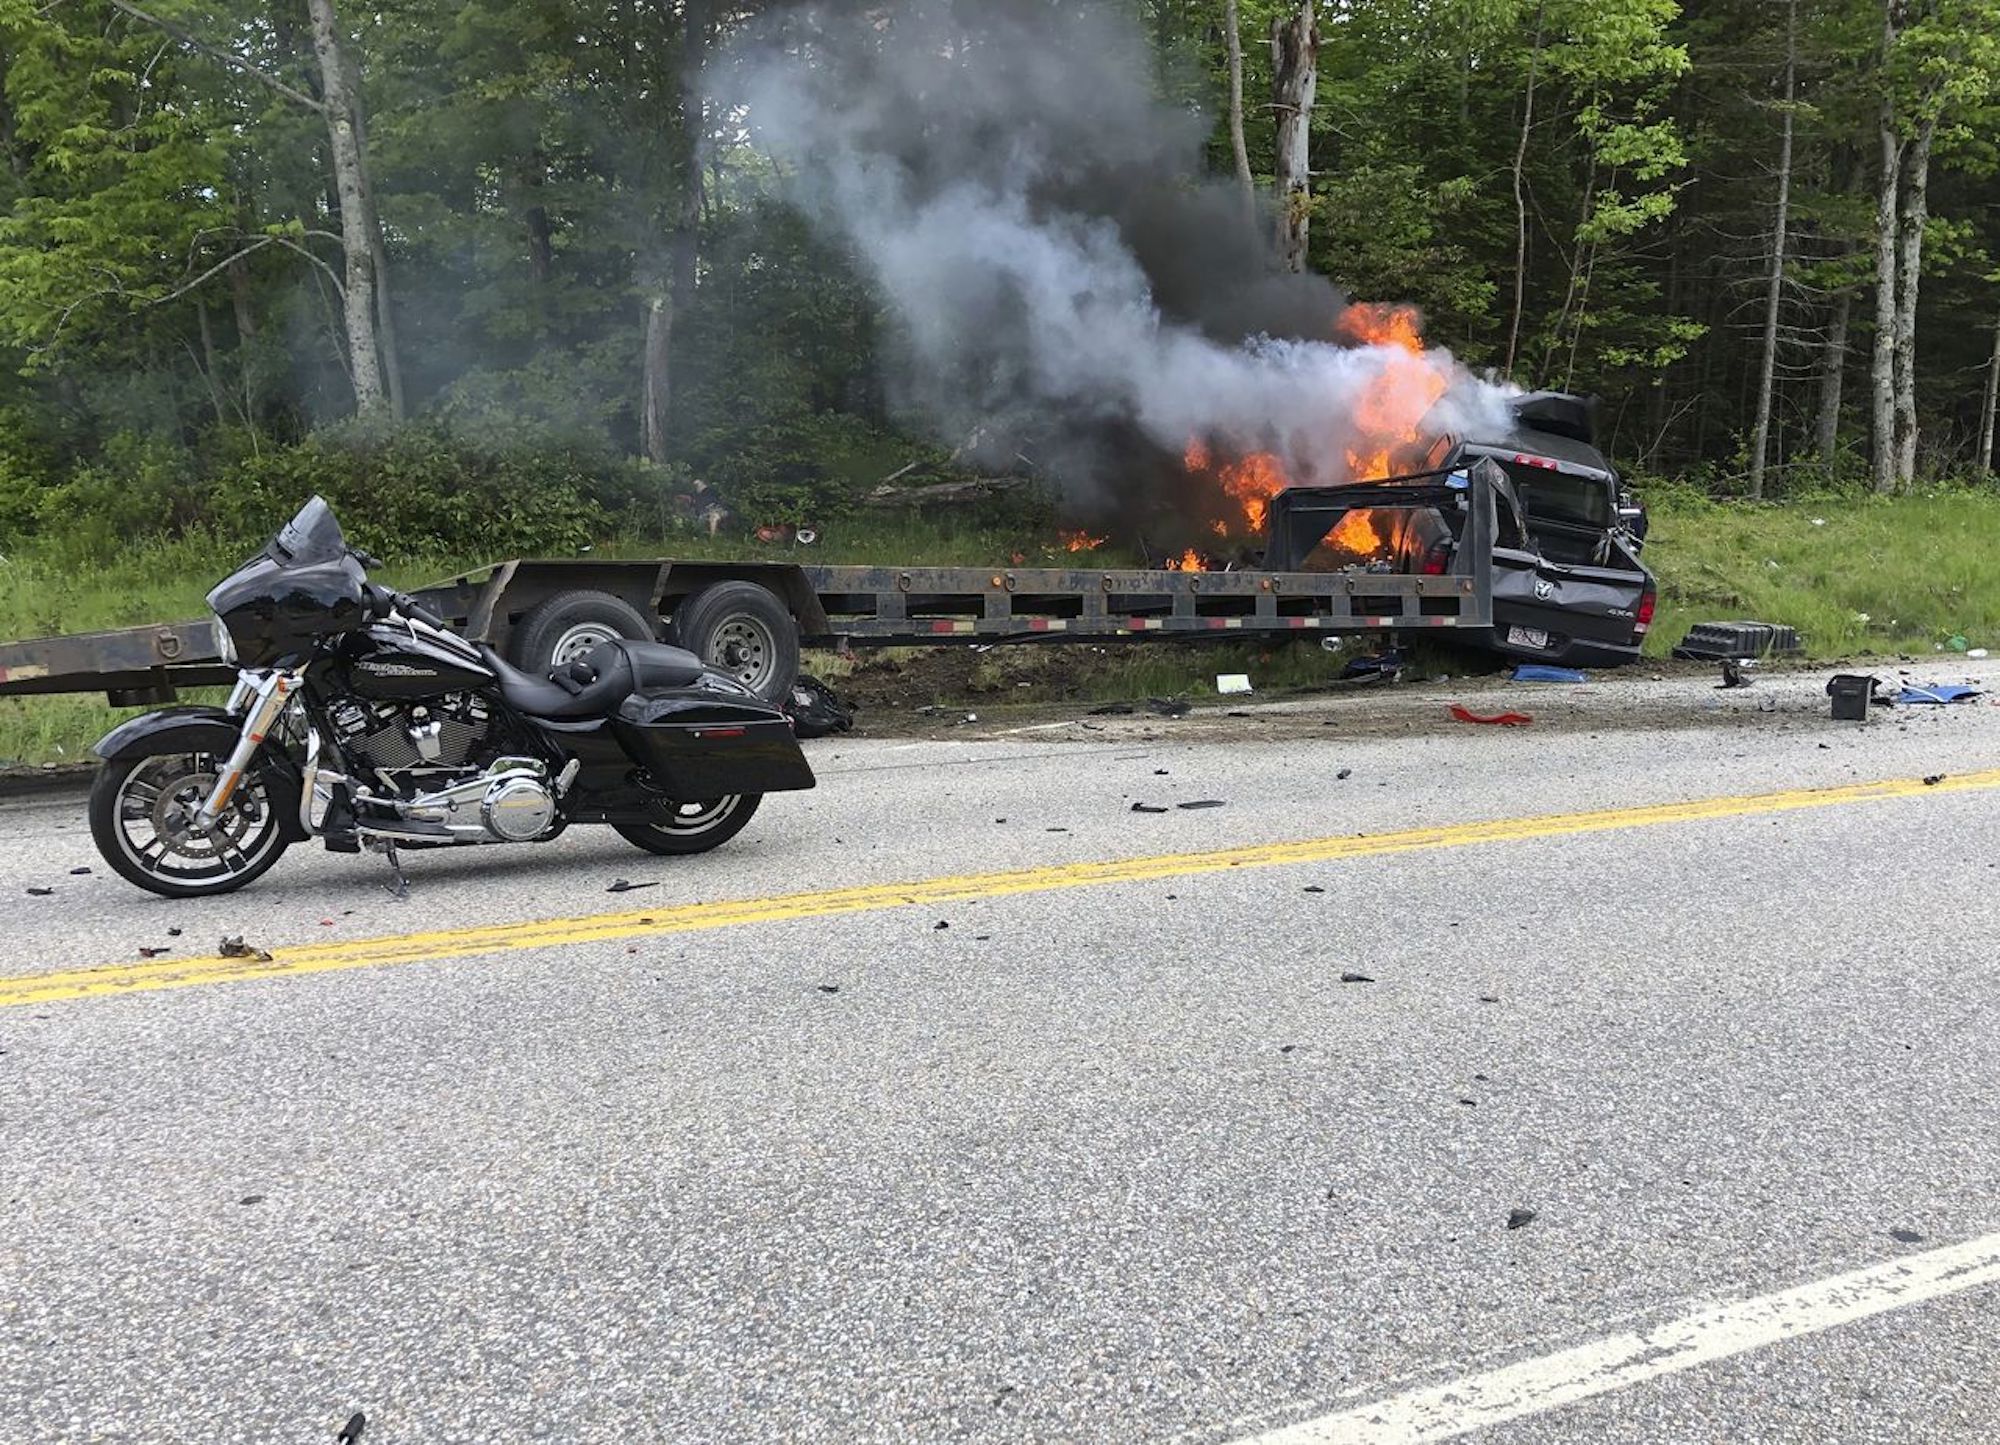 一个视图的摩托车和卡车坠毁事故。